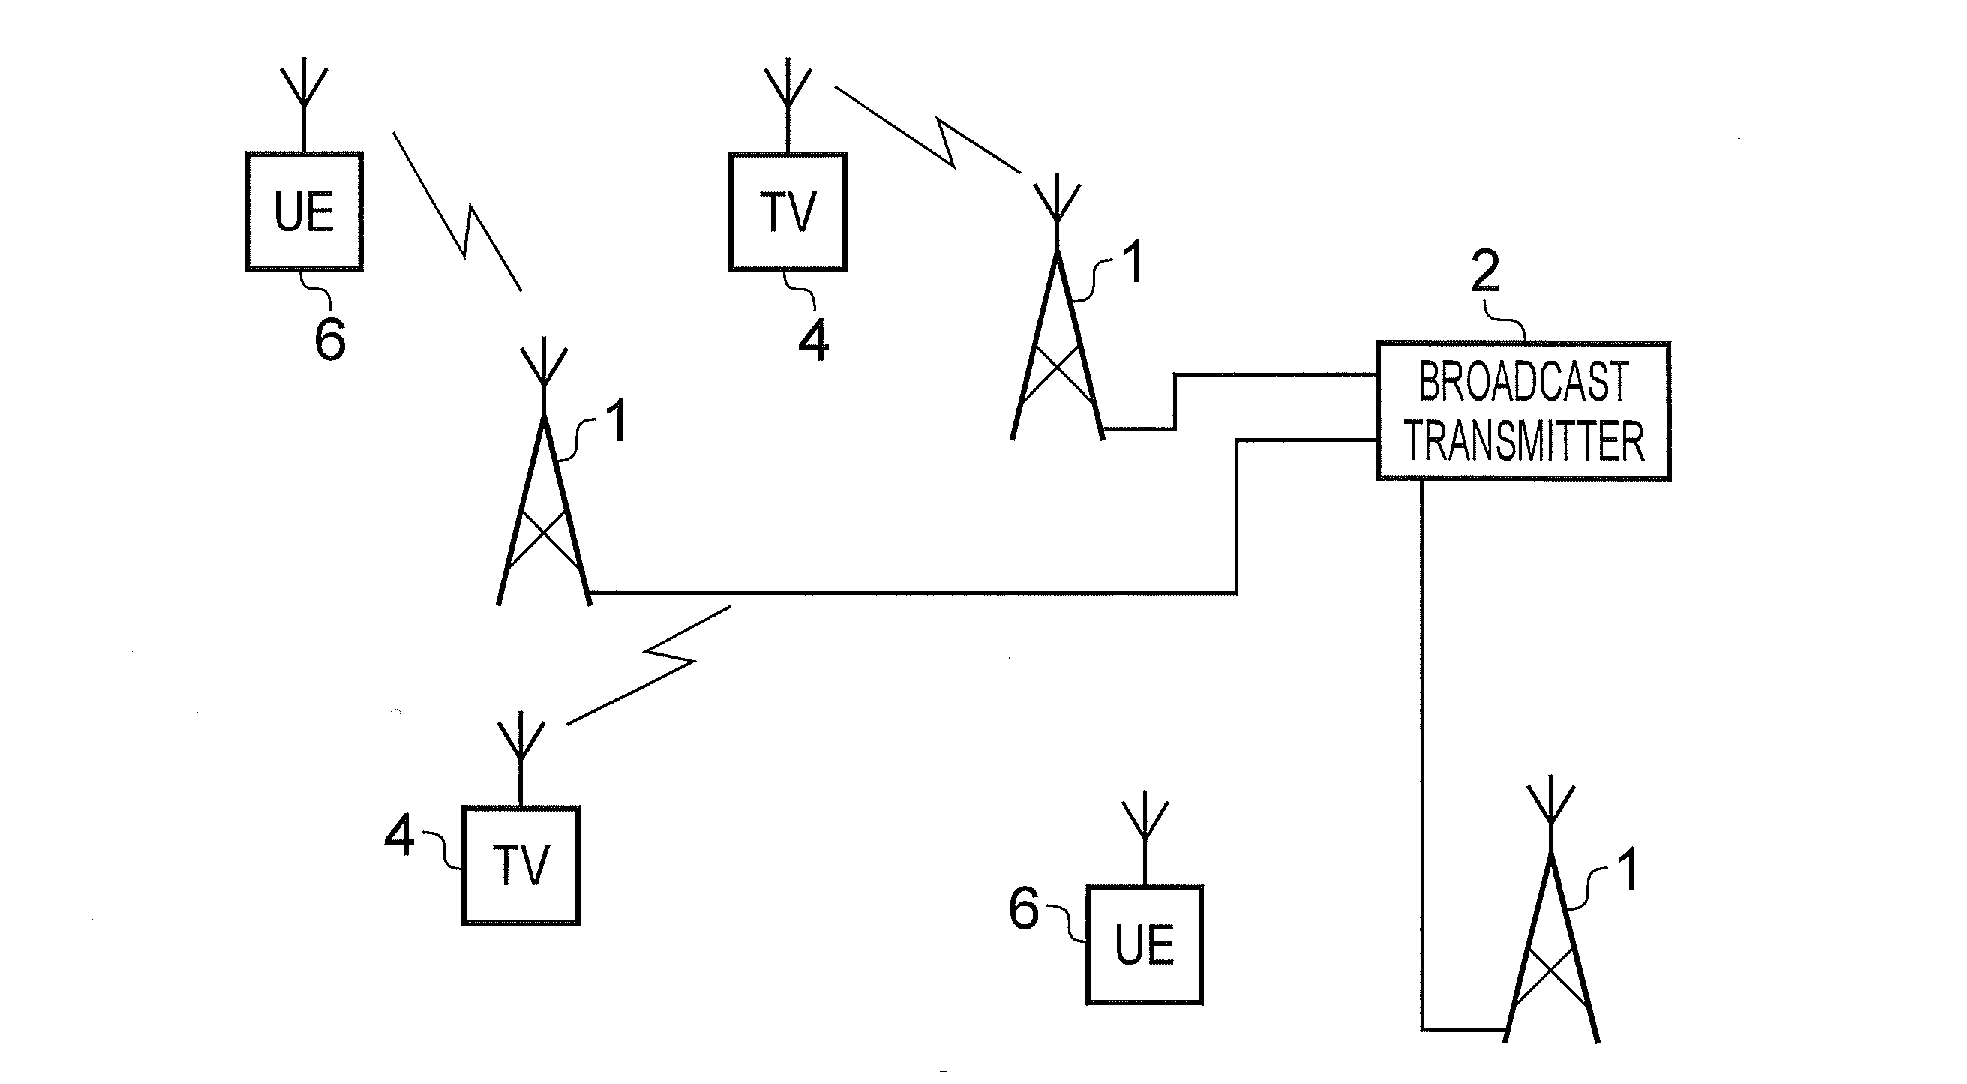 Transmitter and method of transmitting